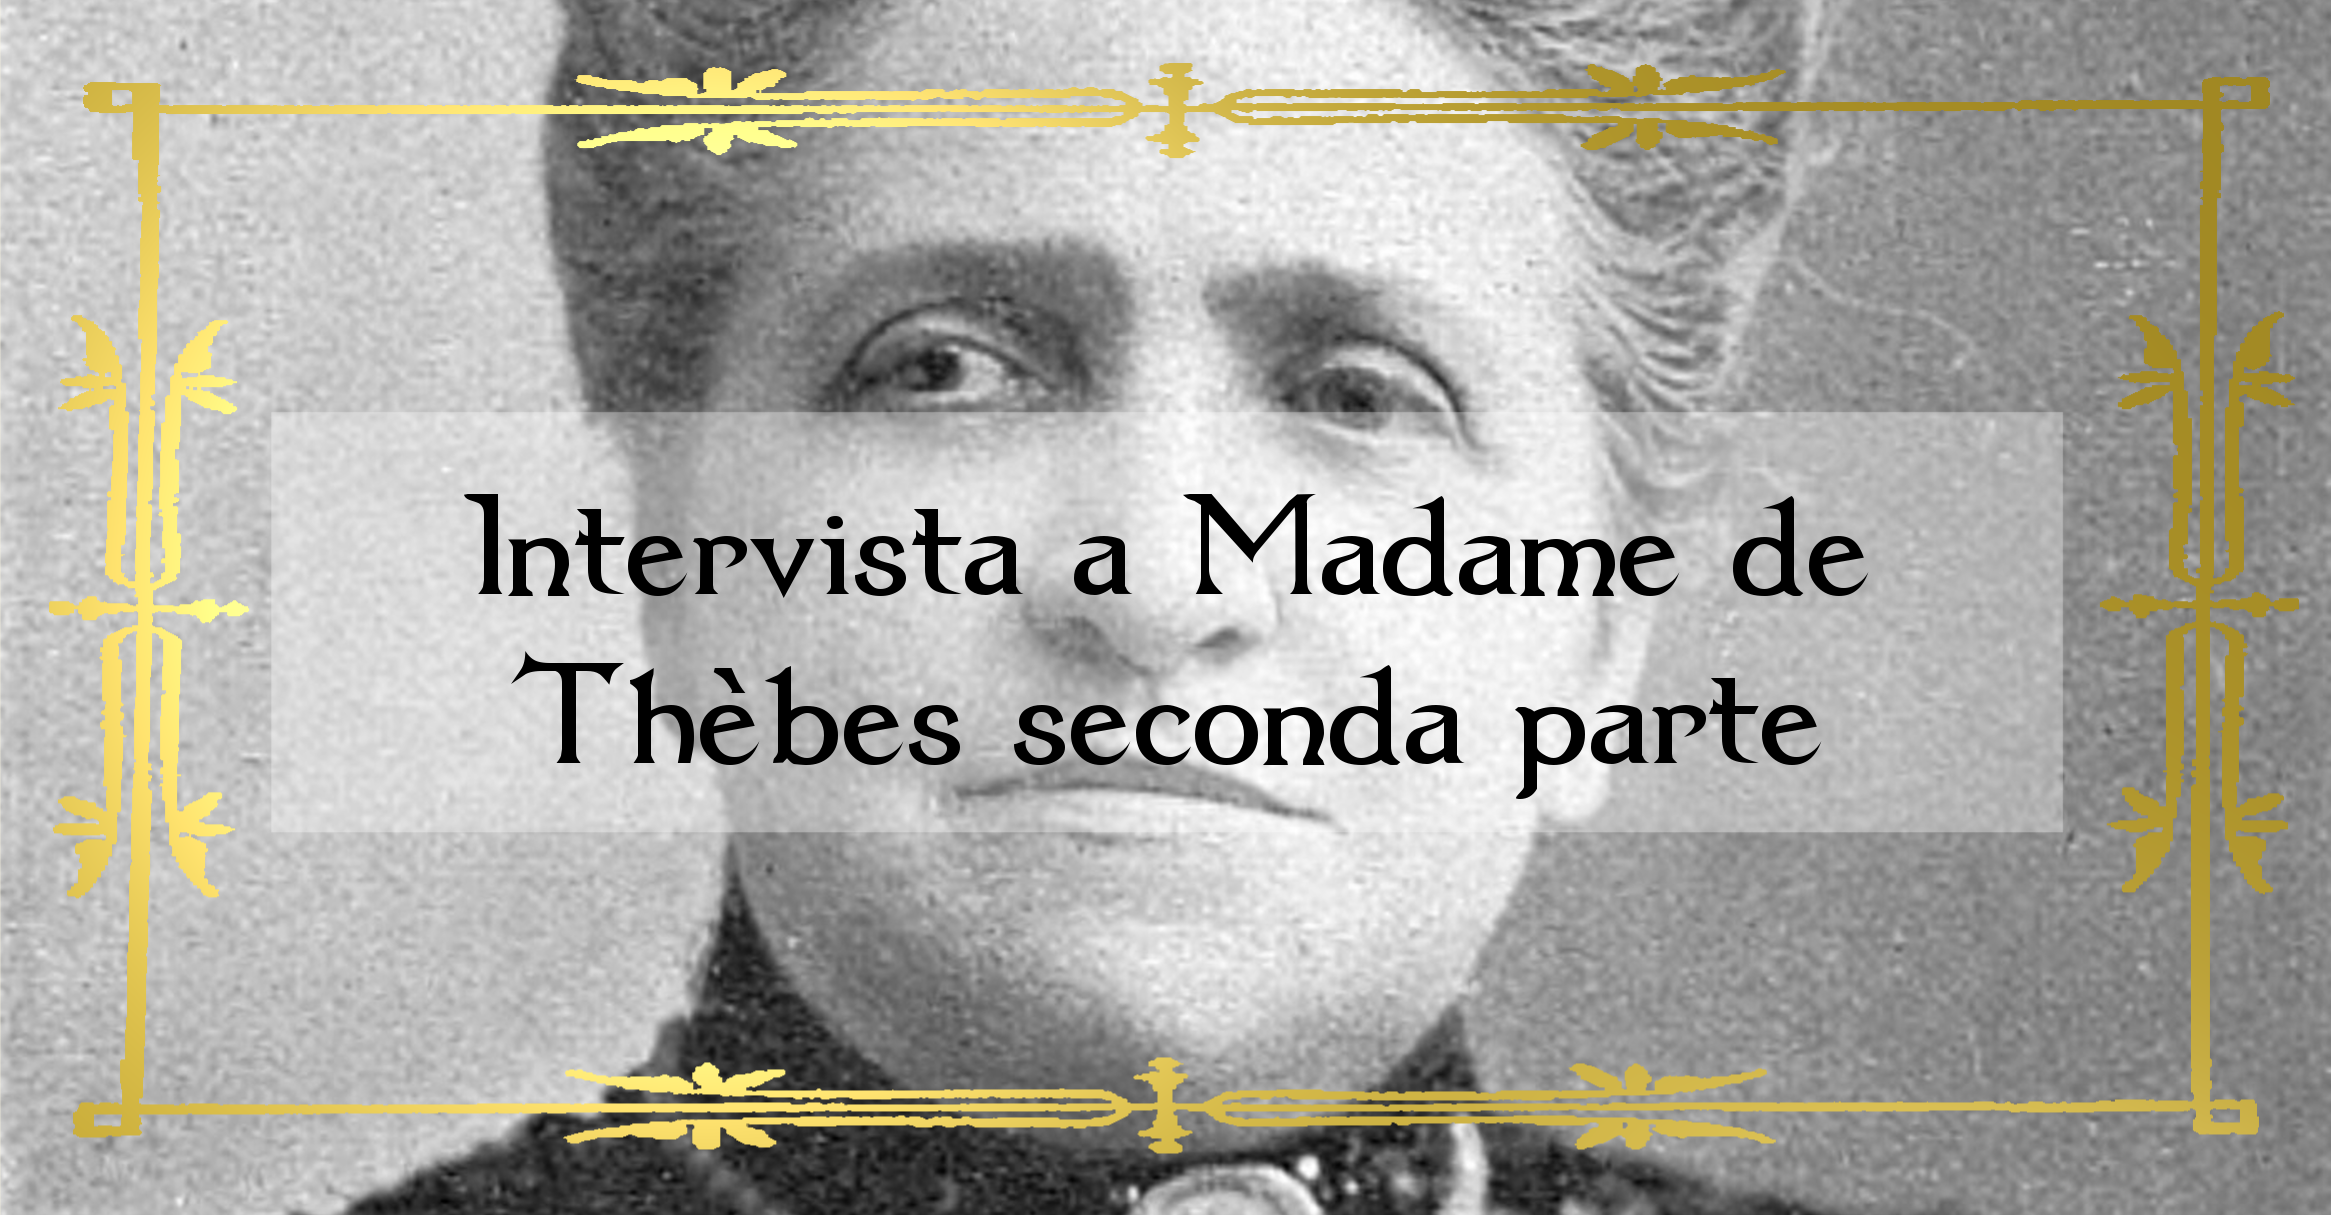 Intervista a Madame de Thebes seconda parte